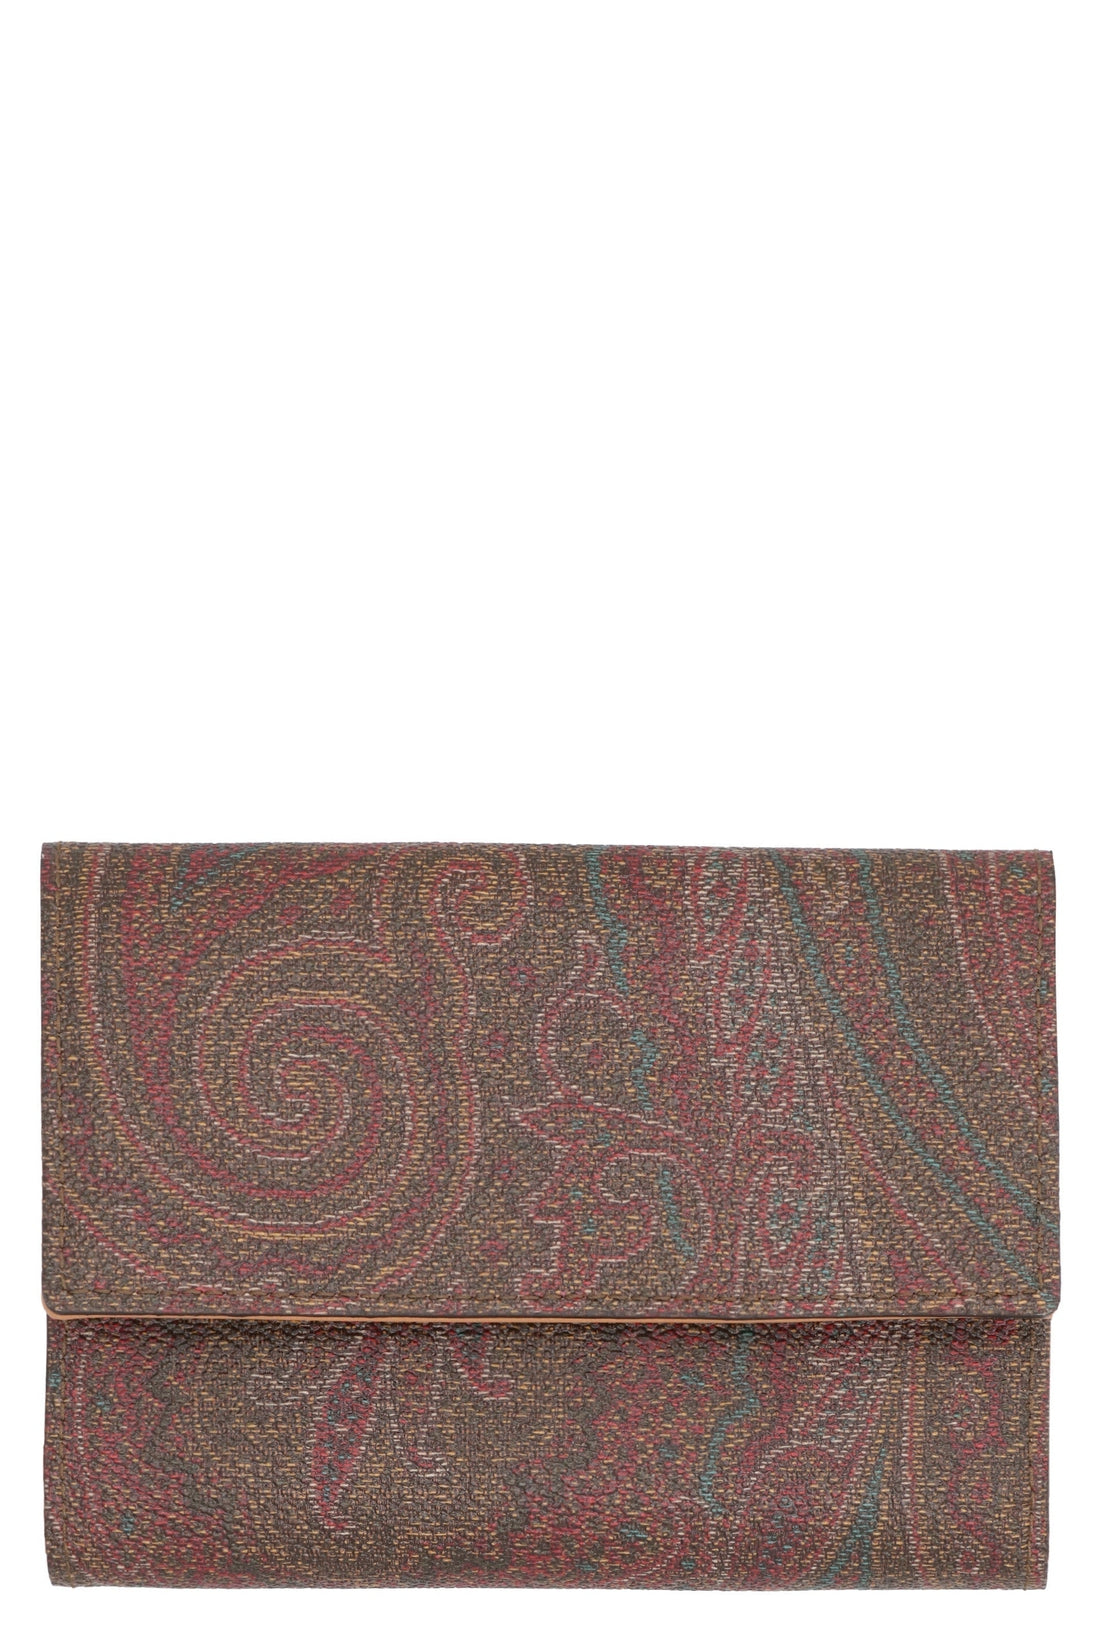 Etro-OUTLET-SALE-Paisley print wallet-ARCHIVIST